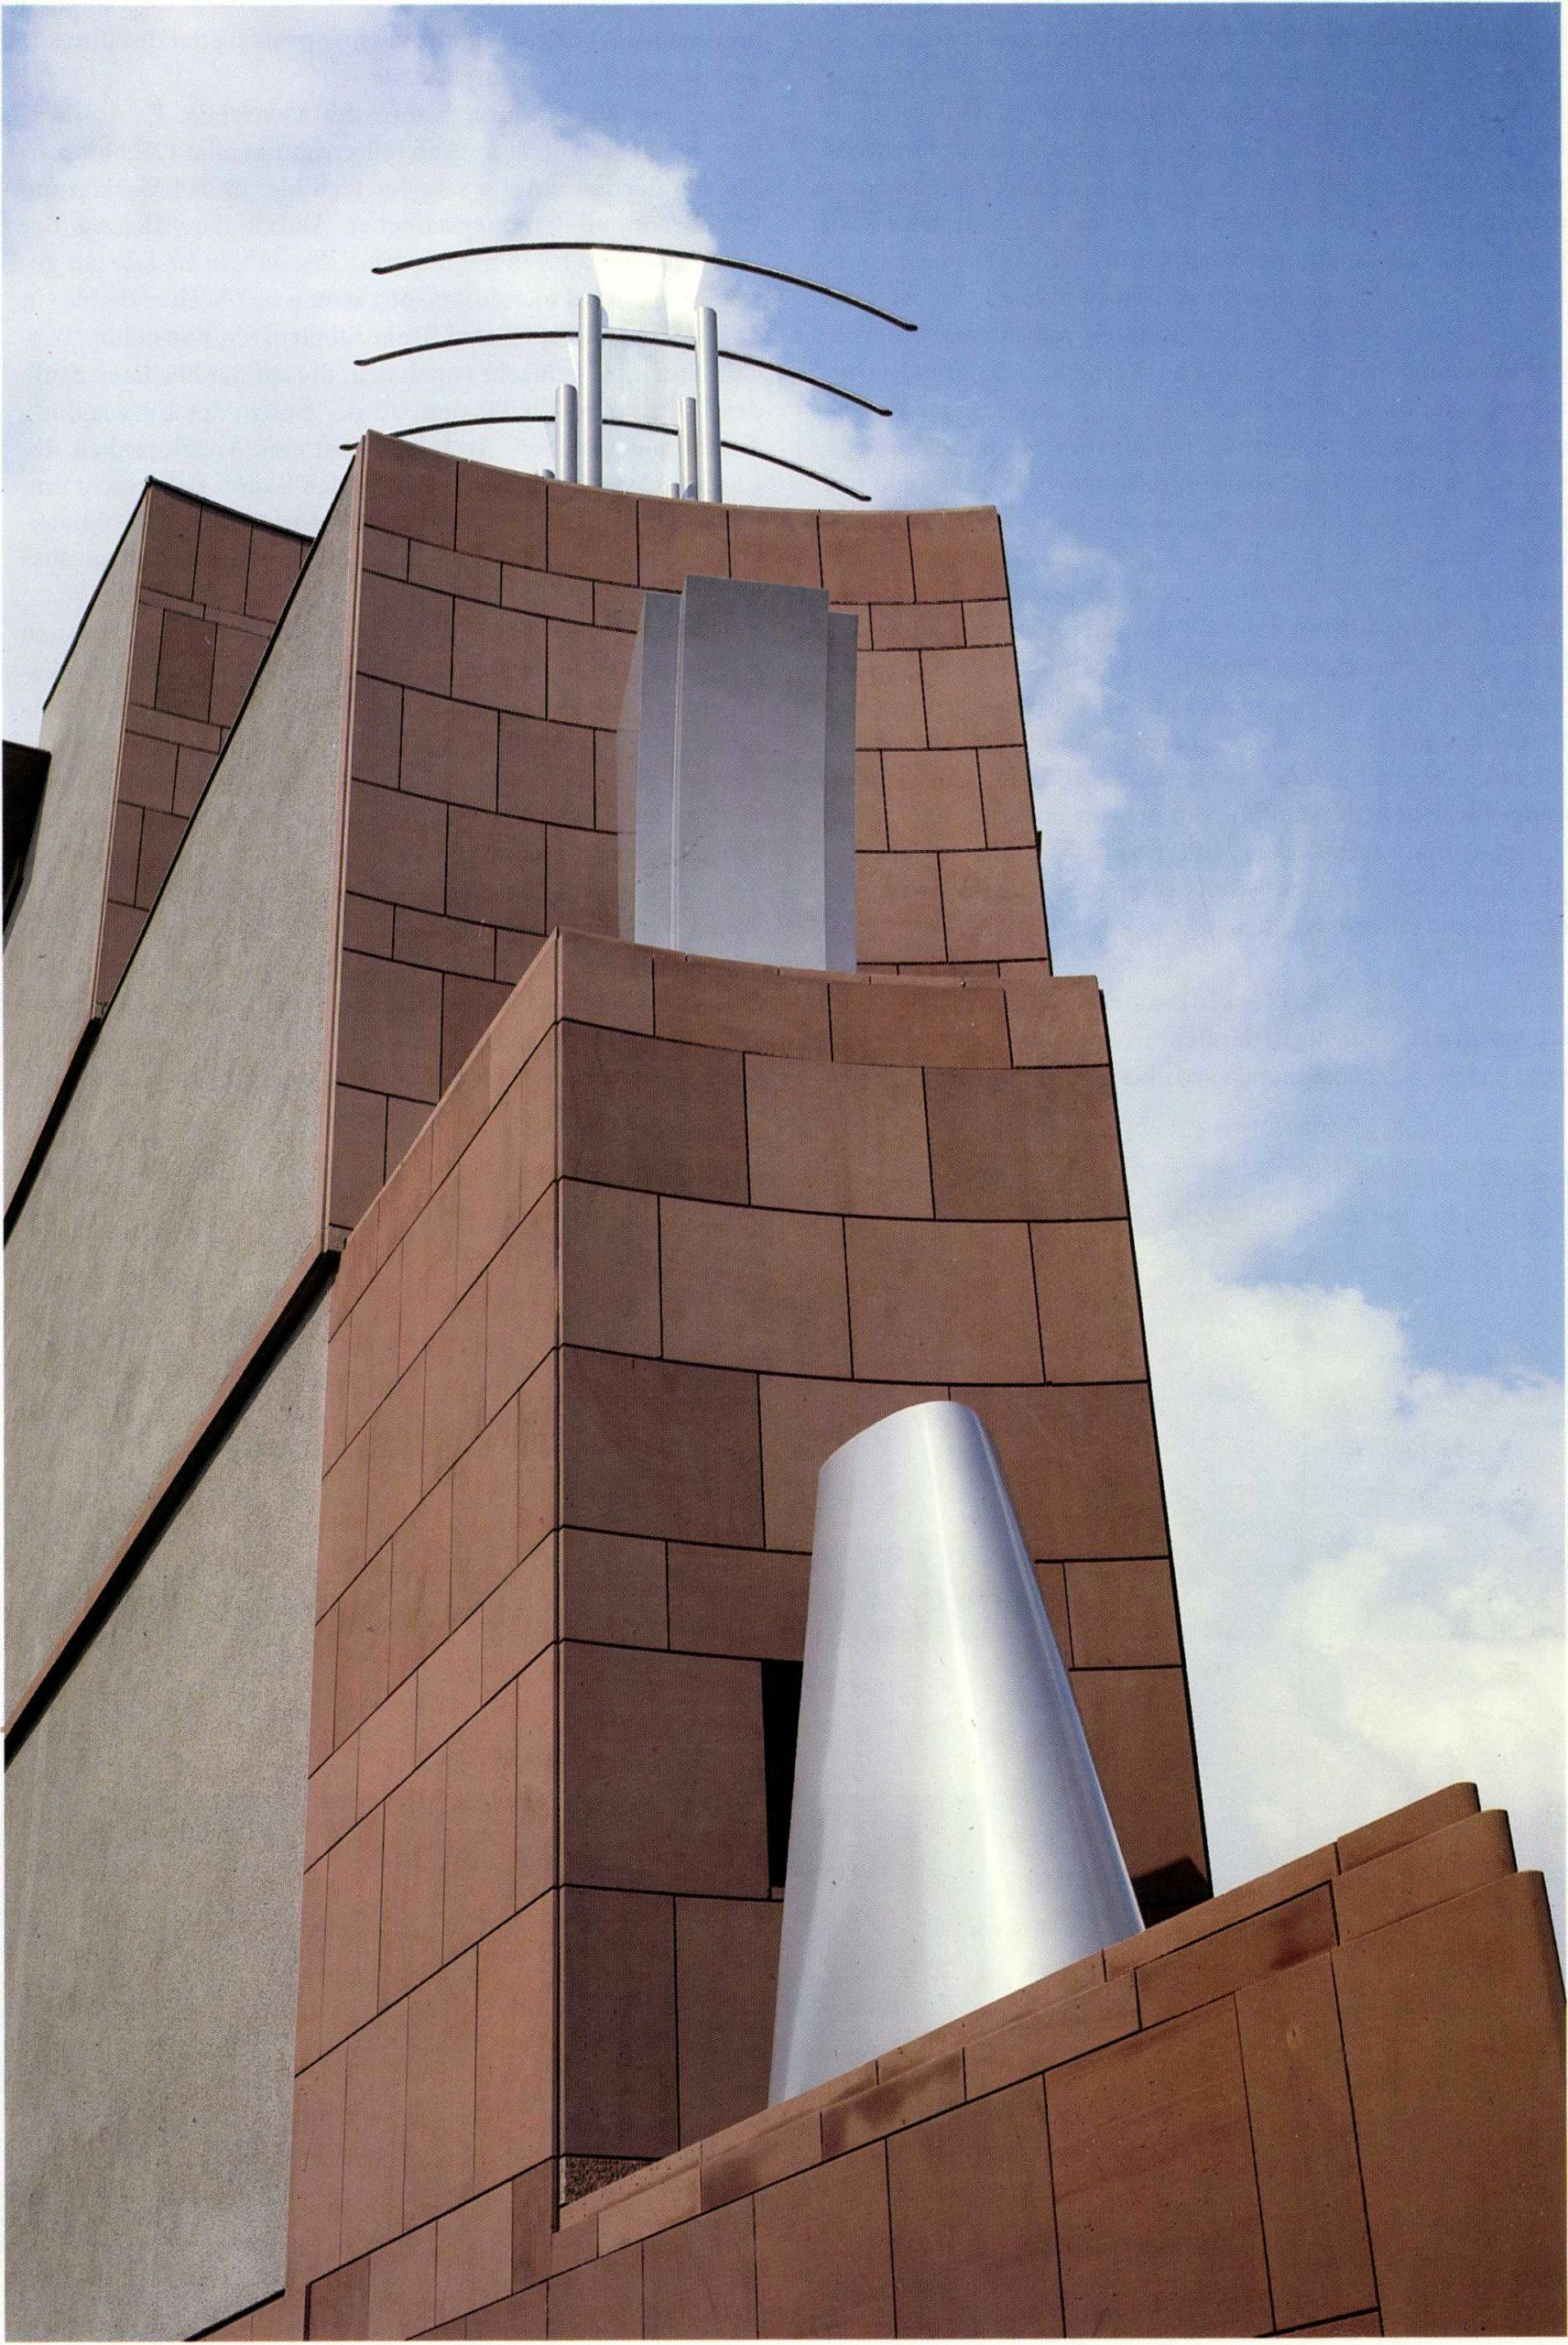 Museum voor Moderne Kunst, Frankfurt, 1983-91. Op de punt van het gebouw staan sculpturale toevoegingen die benadrukken dat het hier om een cultusgebouw gaat.
Foto: Van der Vlugt & Claus